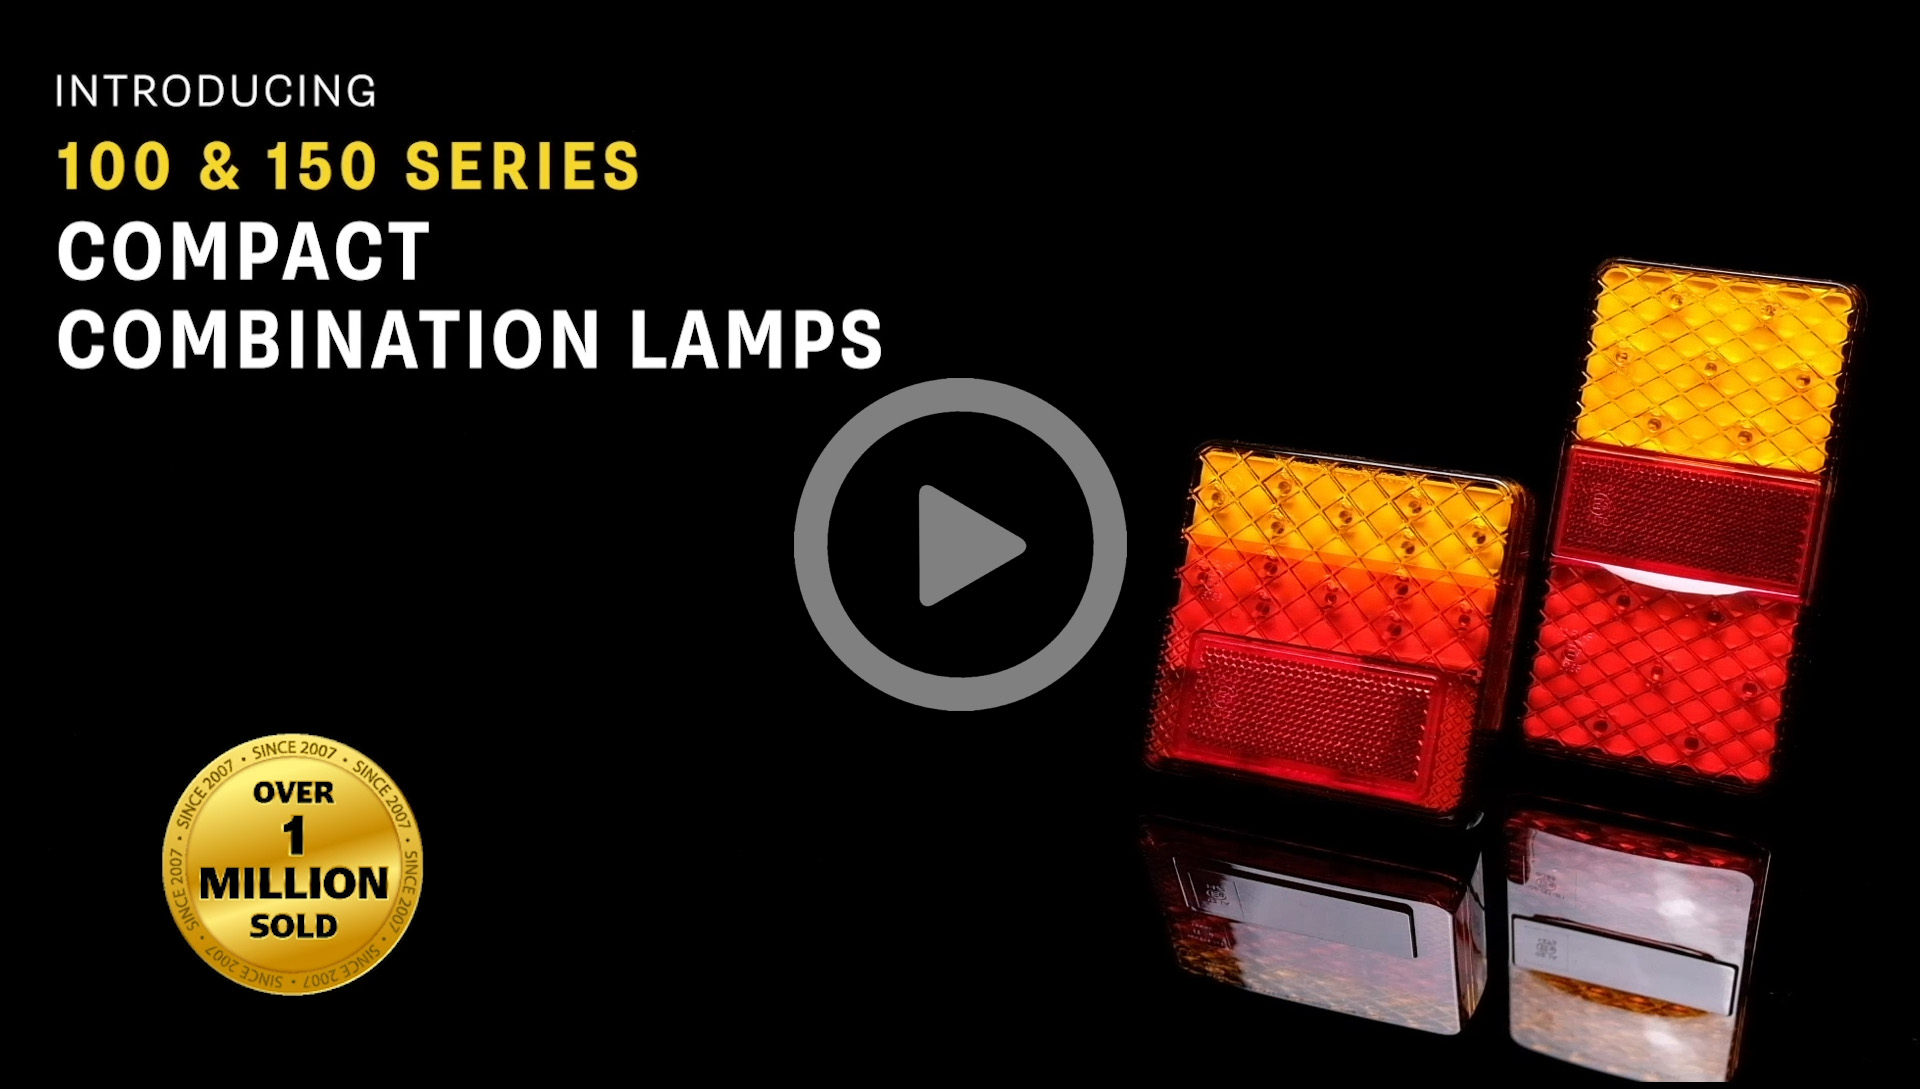 LED Auto Getränkehalter automatischem Ein / Aus, Led-Licht –  Urbanautomotive™